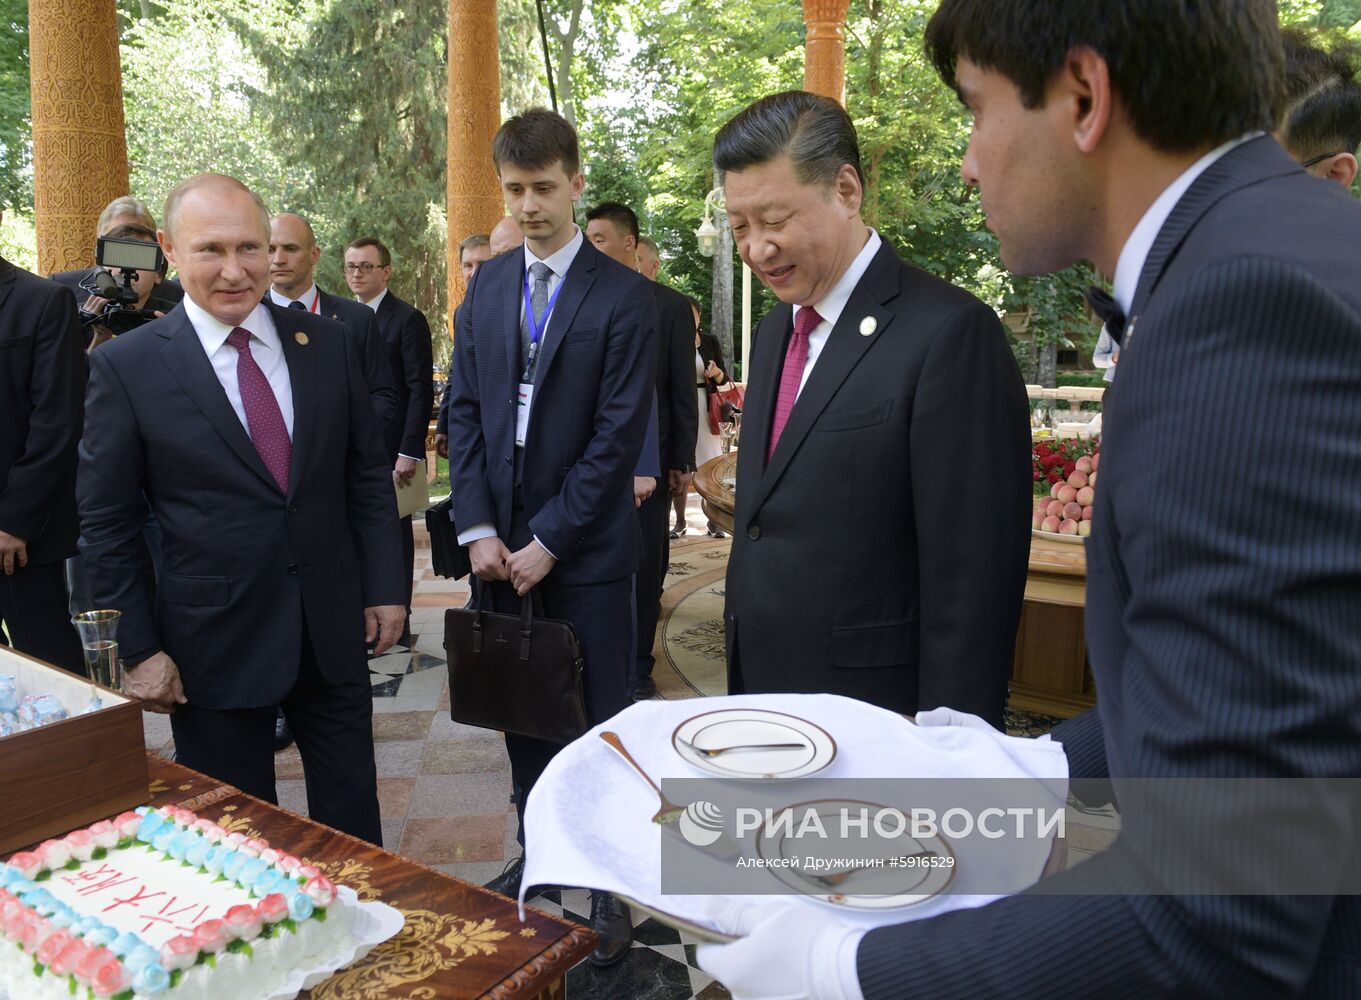 Рабочий визит президента РФ В. Путина в Таджикистан для участия в СВМДА